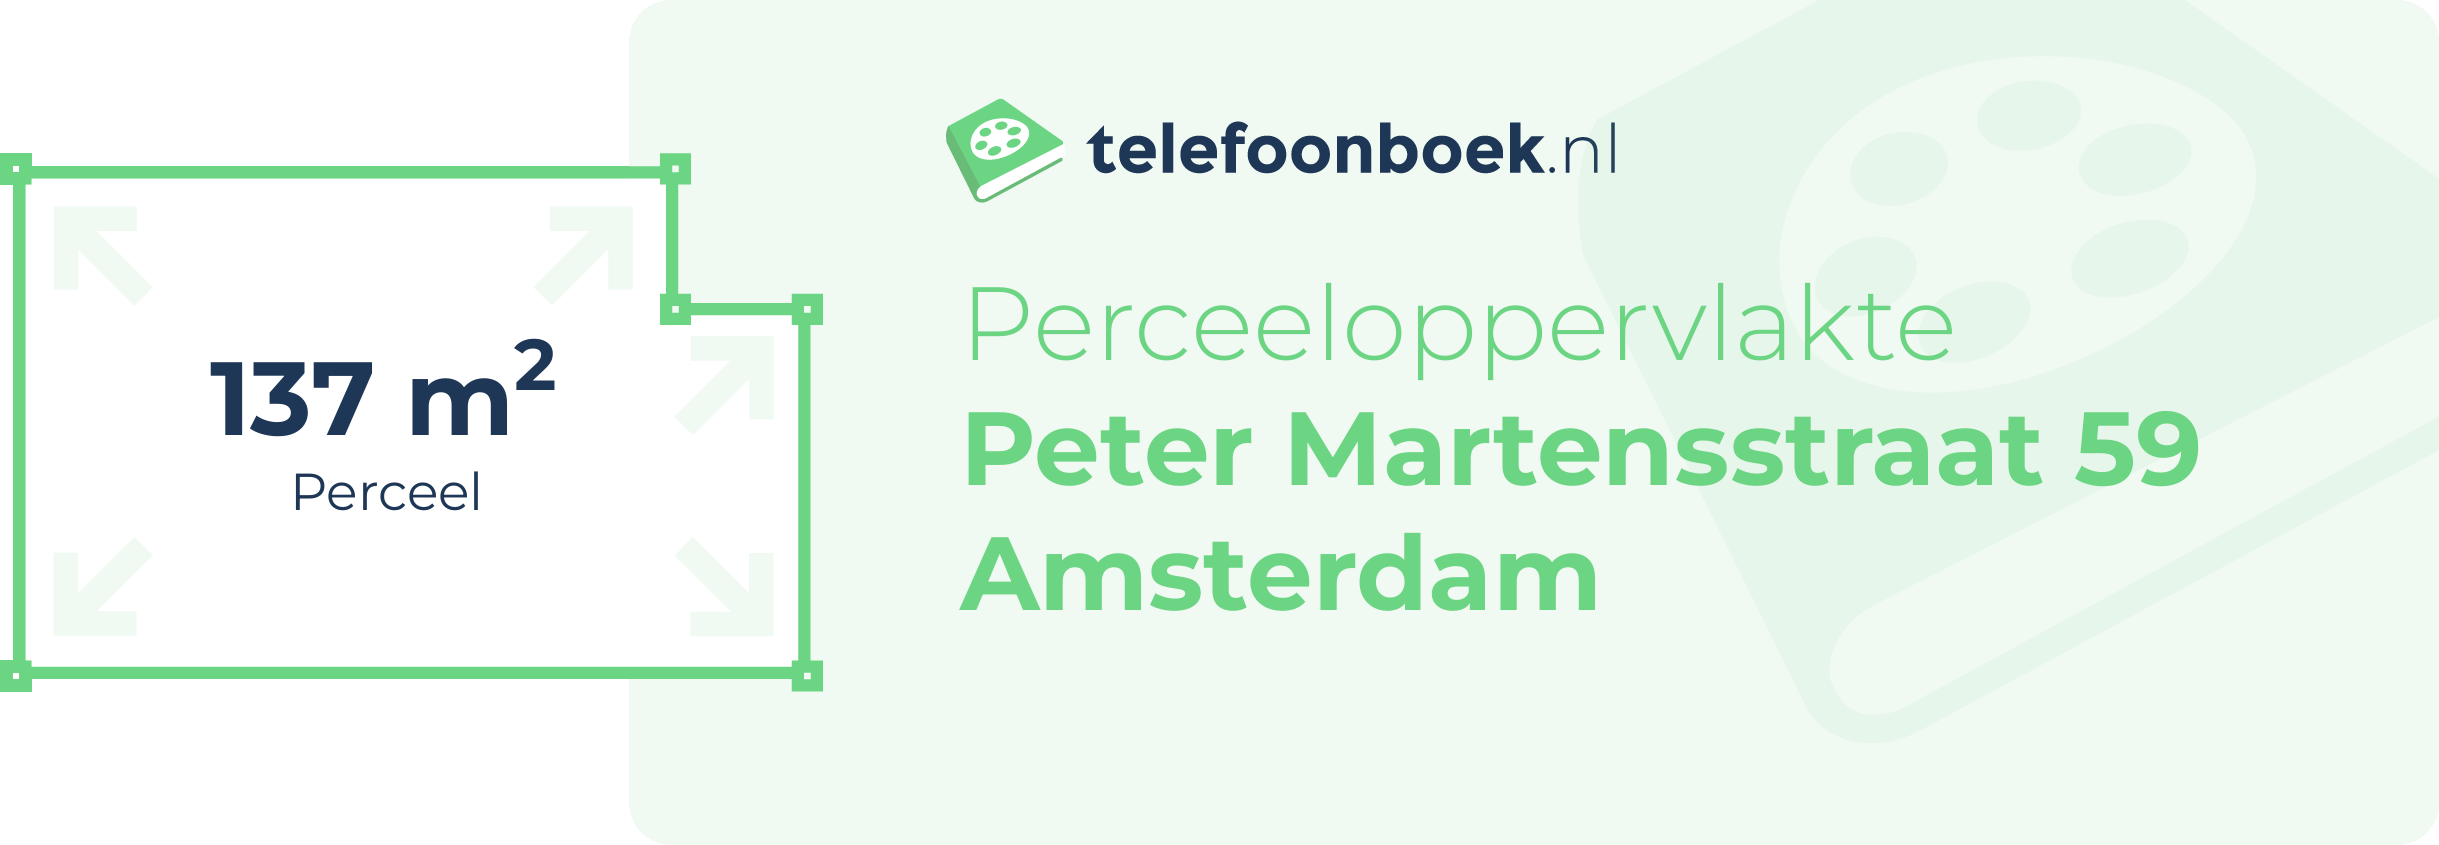 Perceeloppervlakte Peter Martensstraat 59 Amsterdam